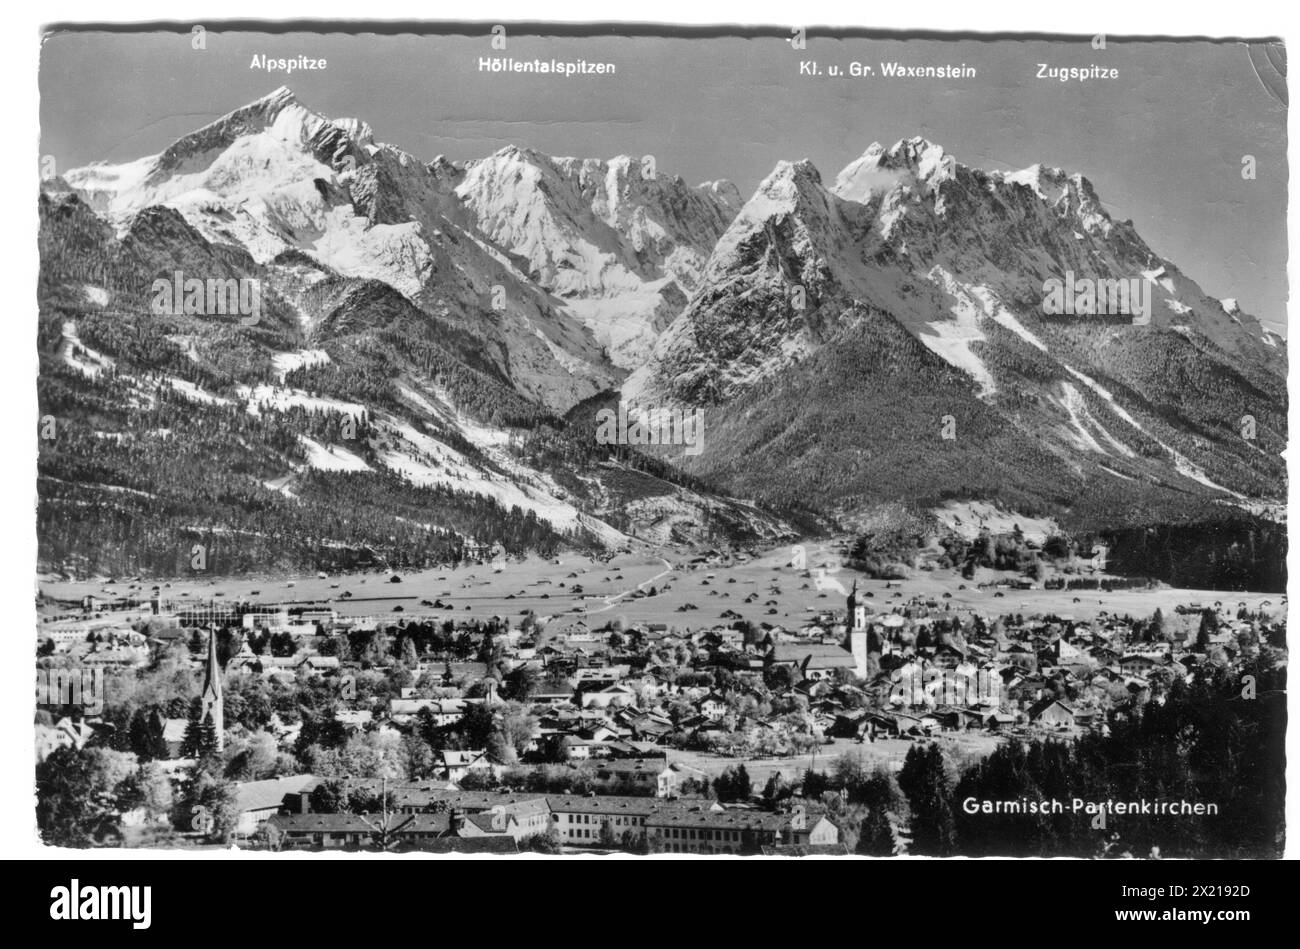 Geographie / Reisen, Deutschland, Städte und Gemeinden, Garmisch-Partenkirchen, Ansichtskarte, 1950S, ADDITIONAL-RIGHTS-CLEARANCE-INFO-NOT-AVAILABLE Stockfoto